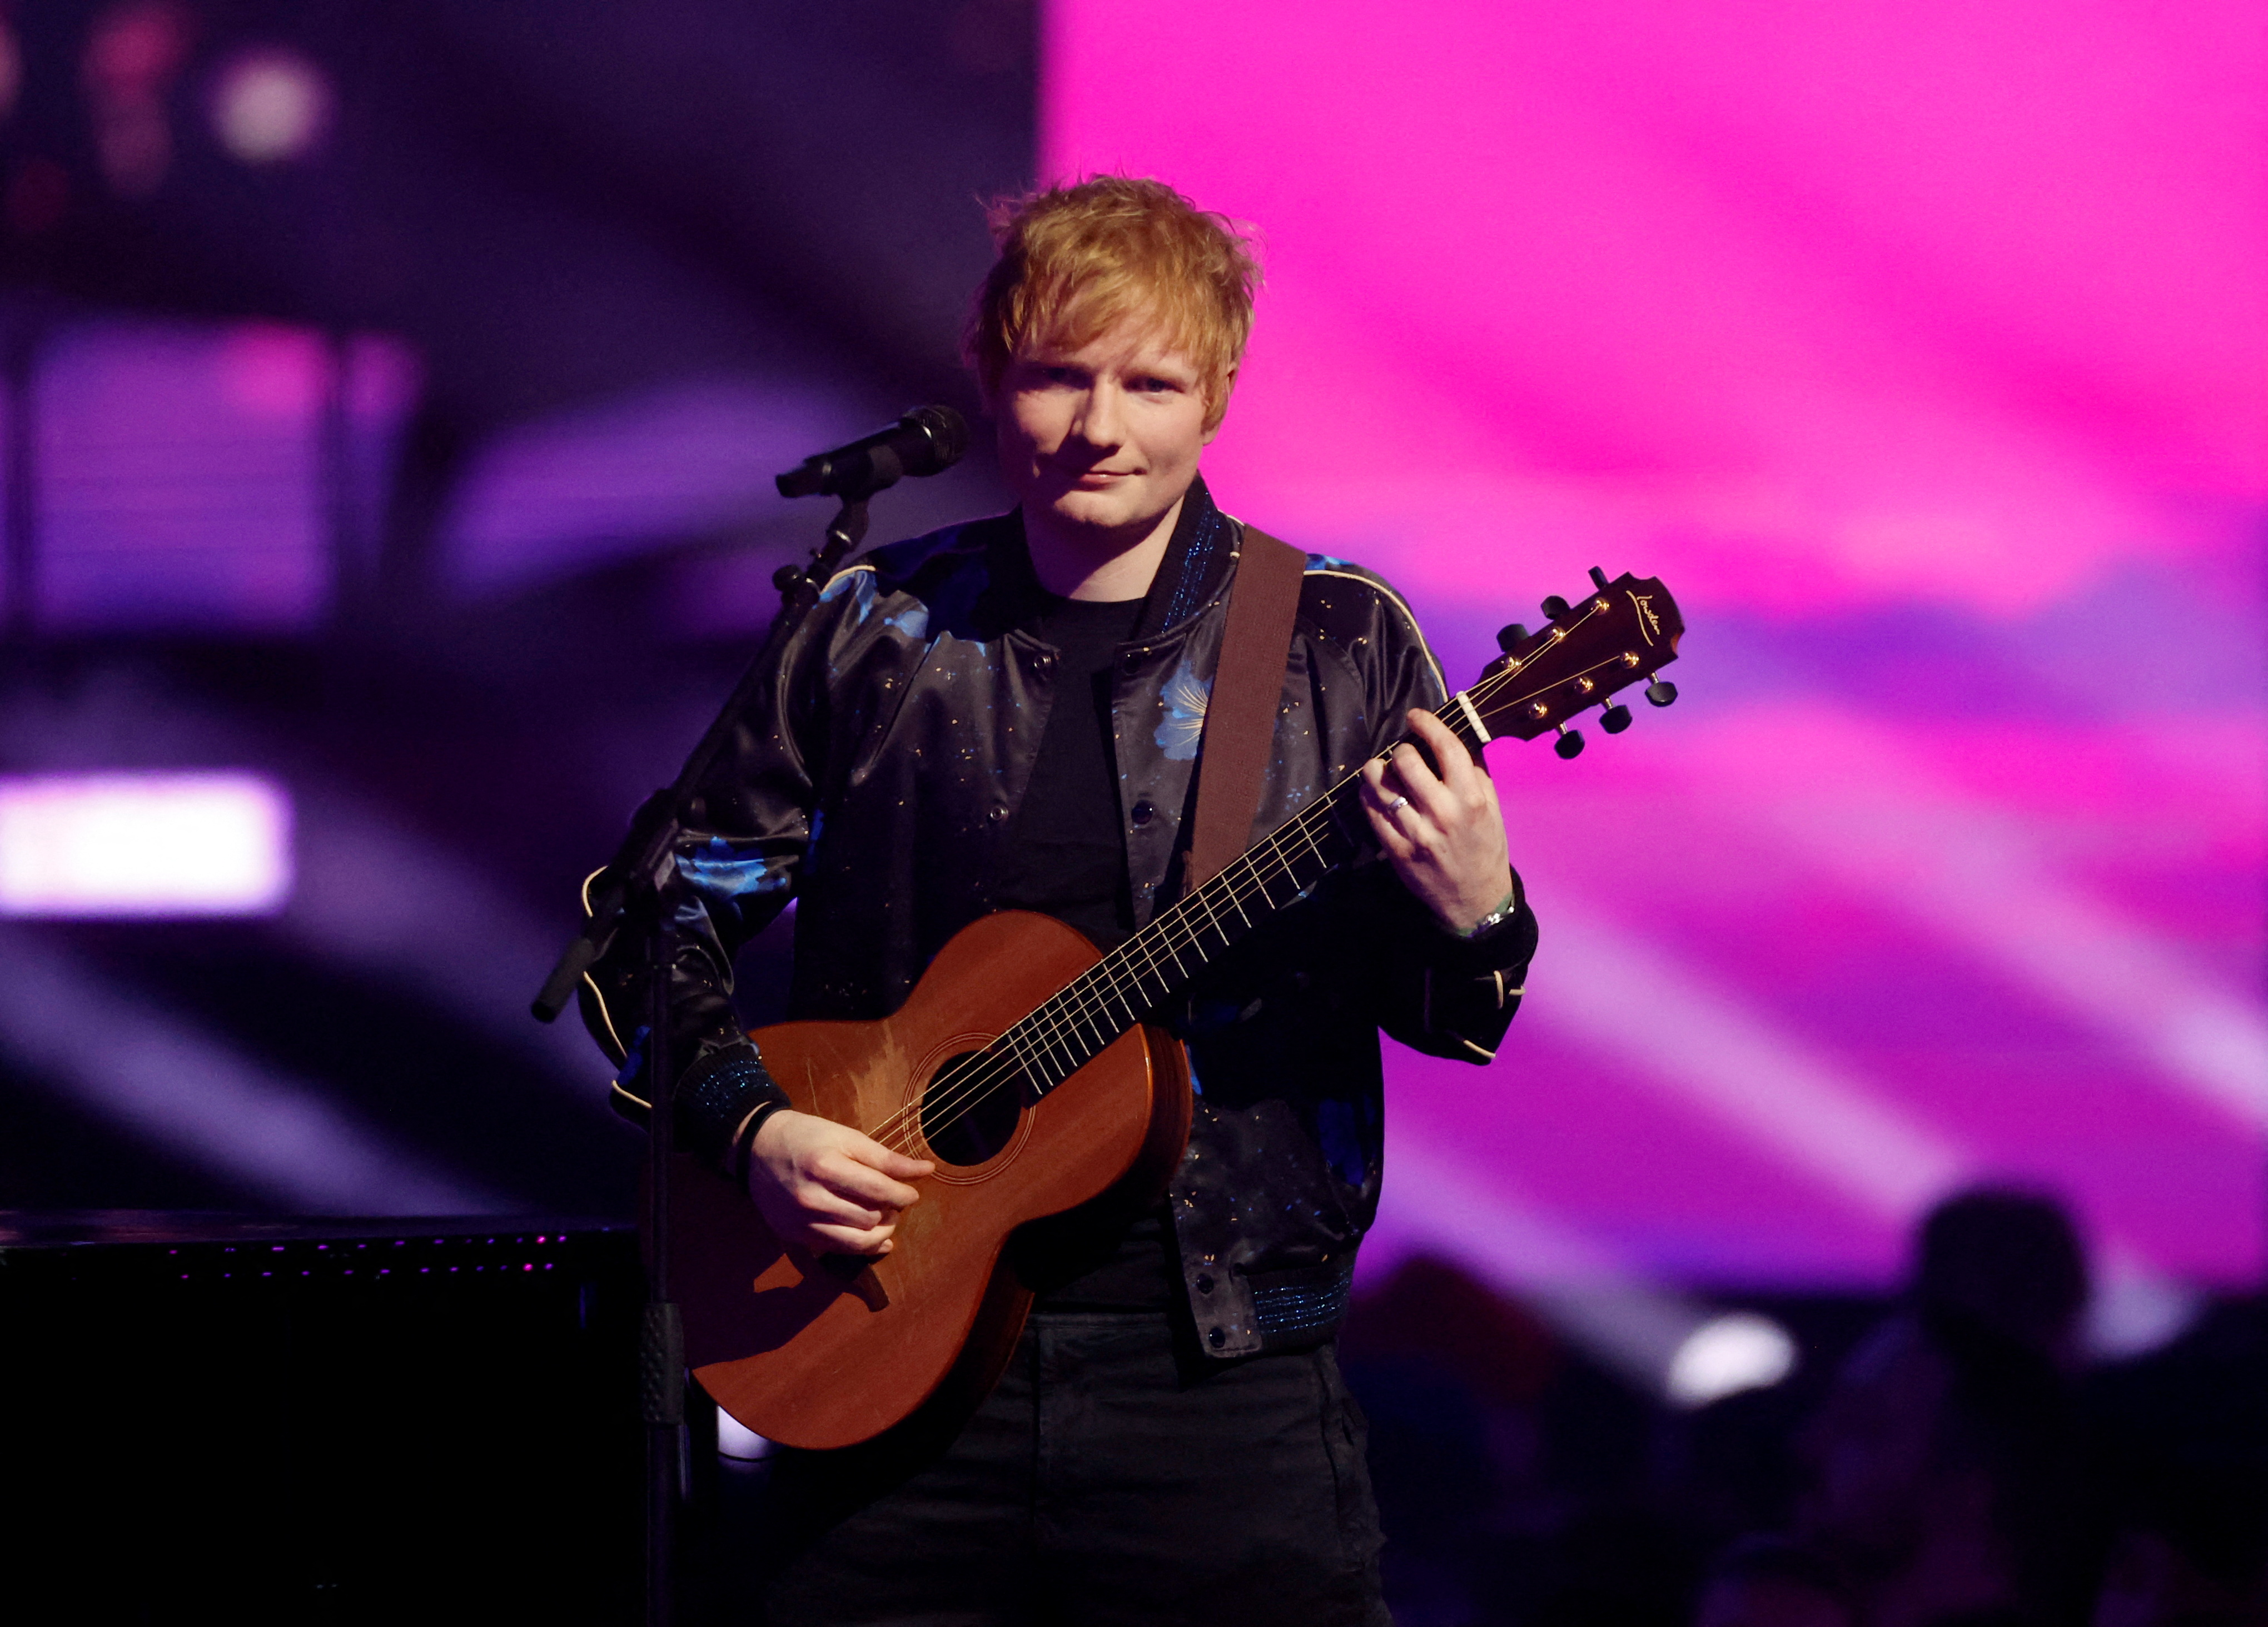 La justicia determinó que Ed Sheeran no plagió “Shape of you”: la comparación con la canción del autor que lo acusó